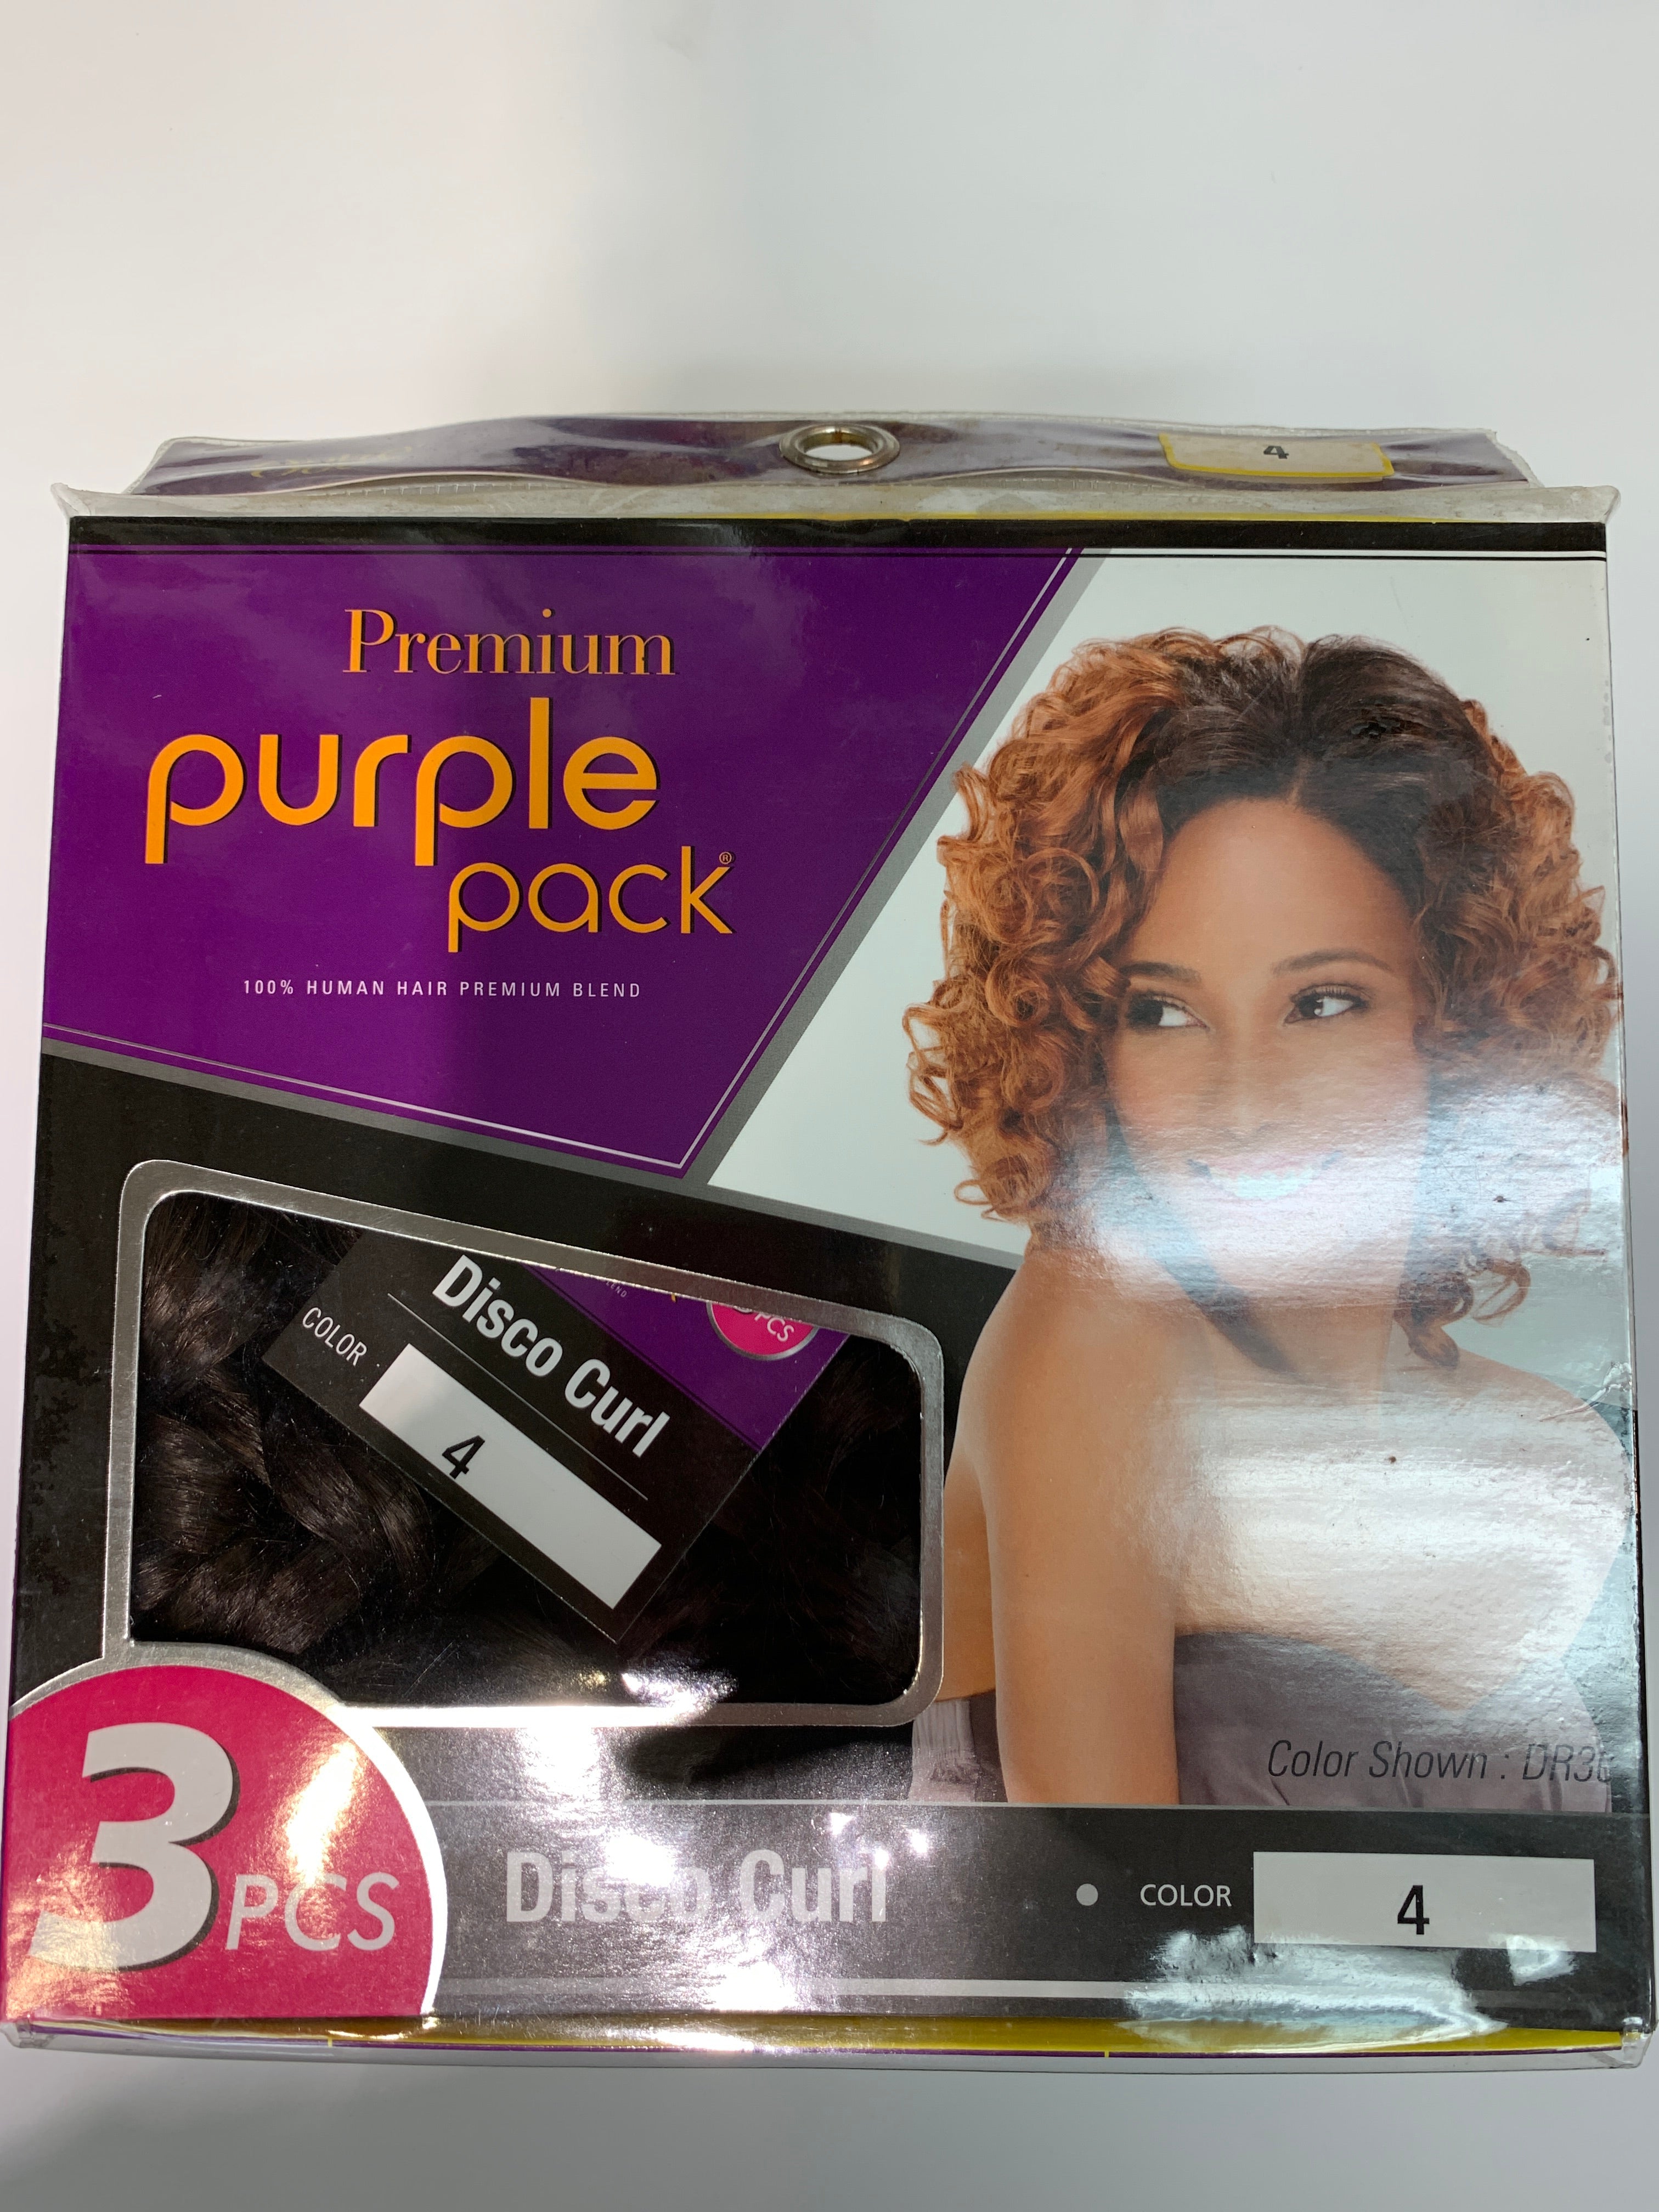 Outre premium purple pack 3pcs Disco curl